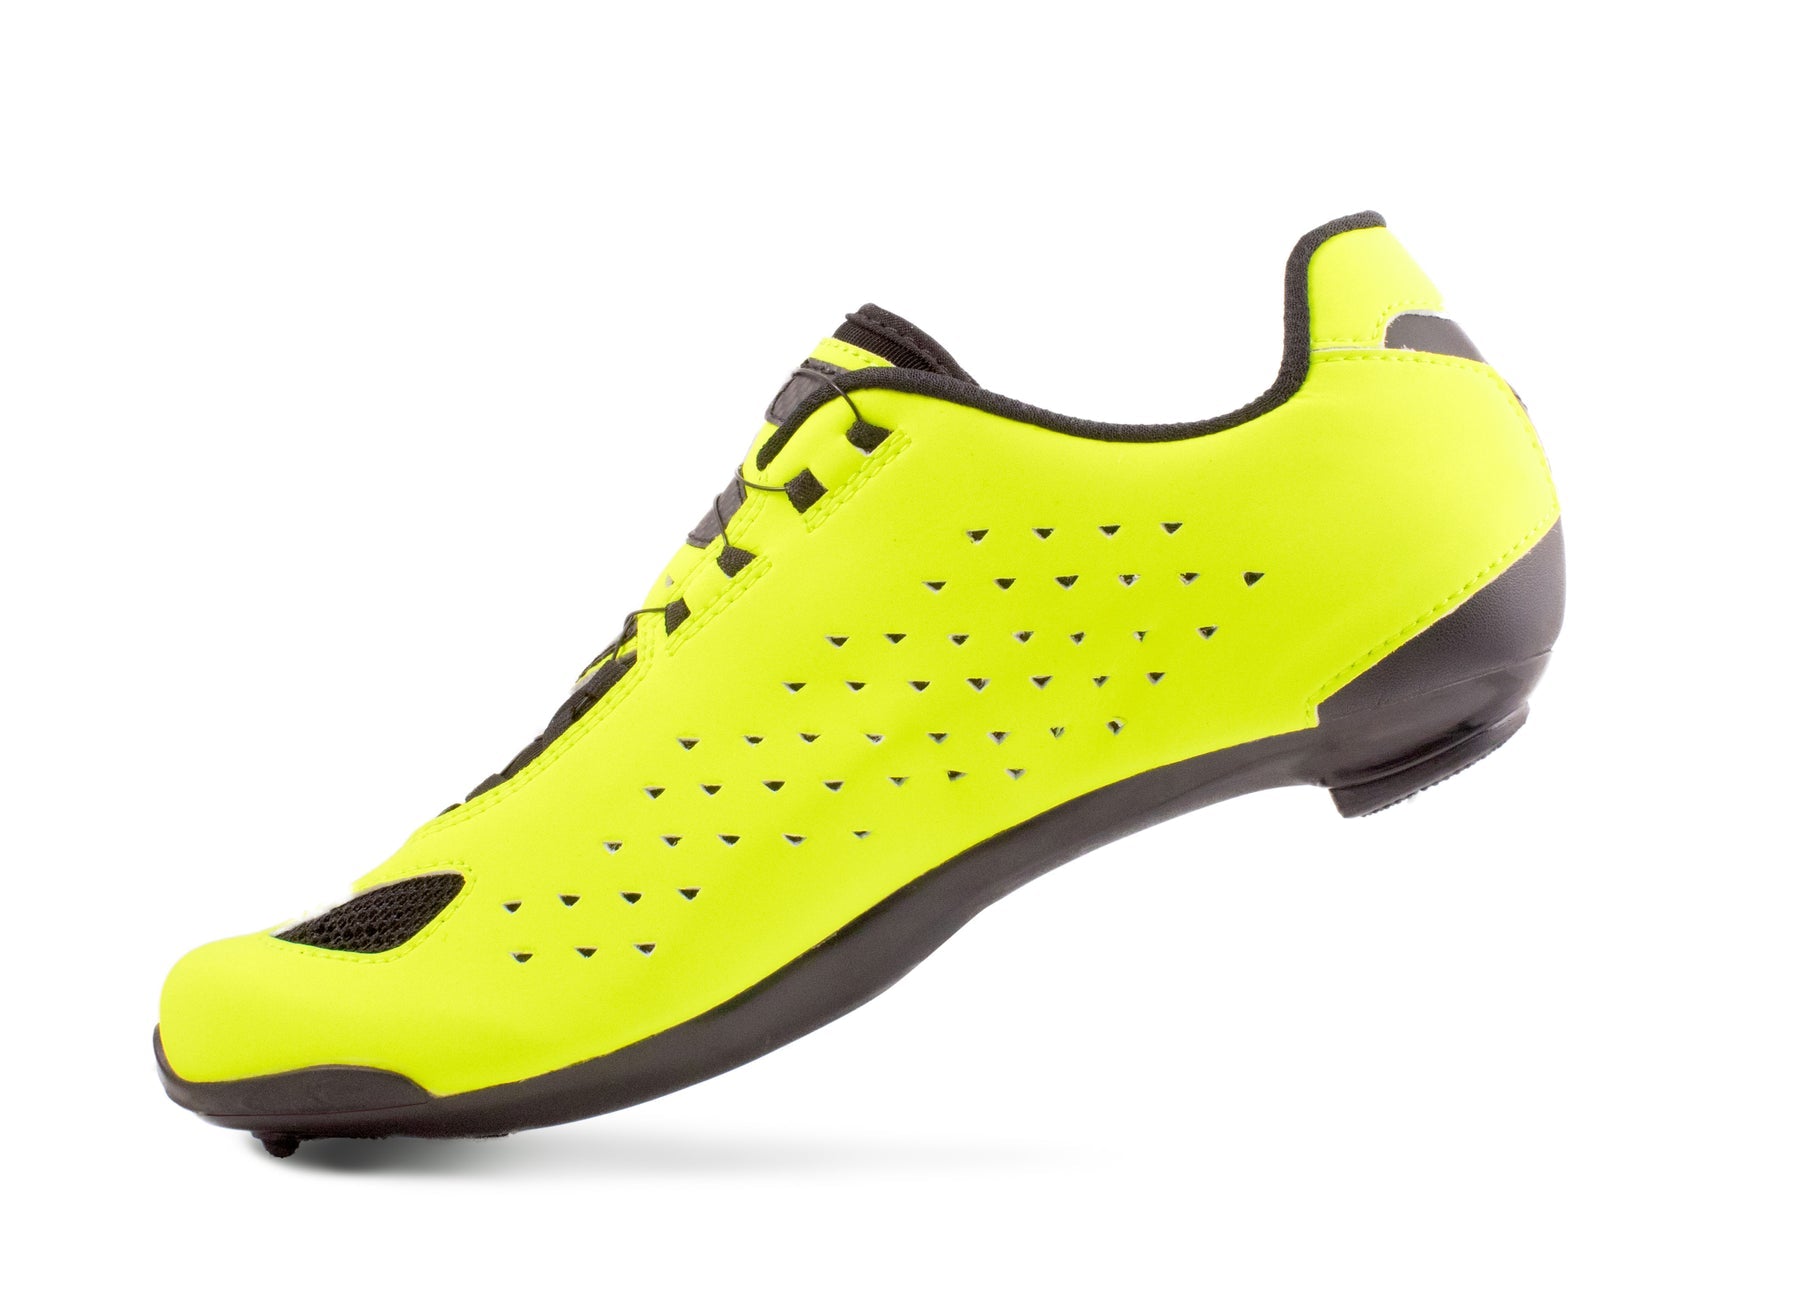 lake shoes CX177-X wide hiviz yellow/black